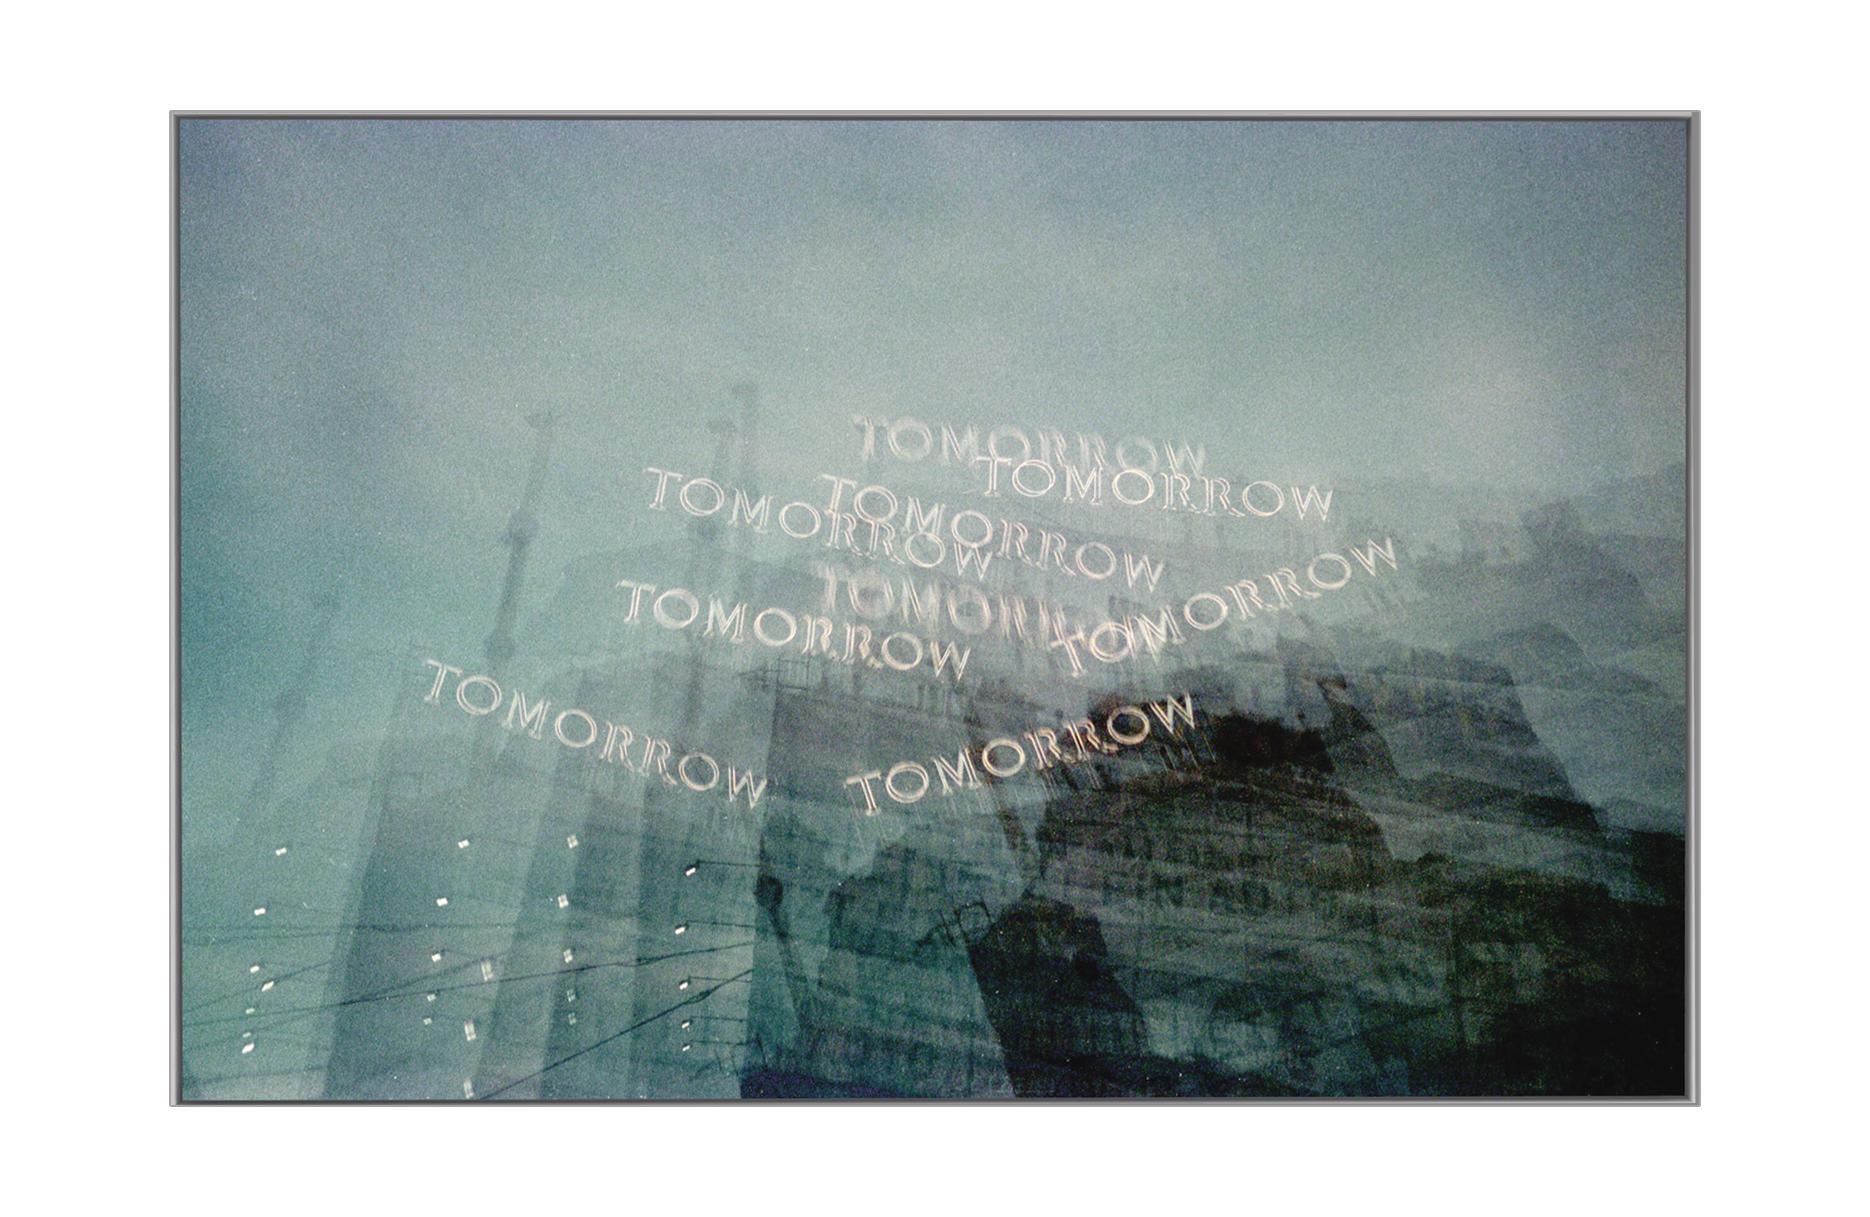 Tomorrow – Analog-Kunstfotografie (Impressionismus), Photograph, von Cara Esten Hurtle